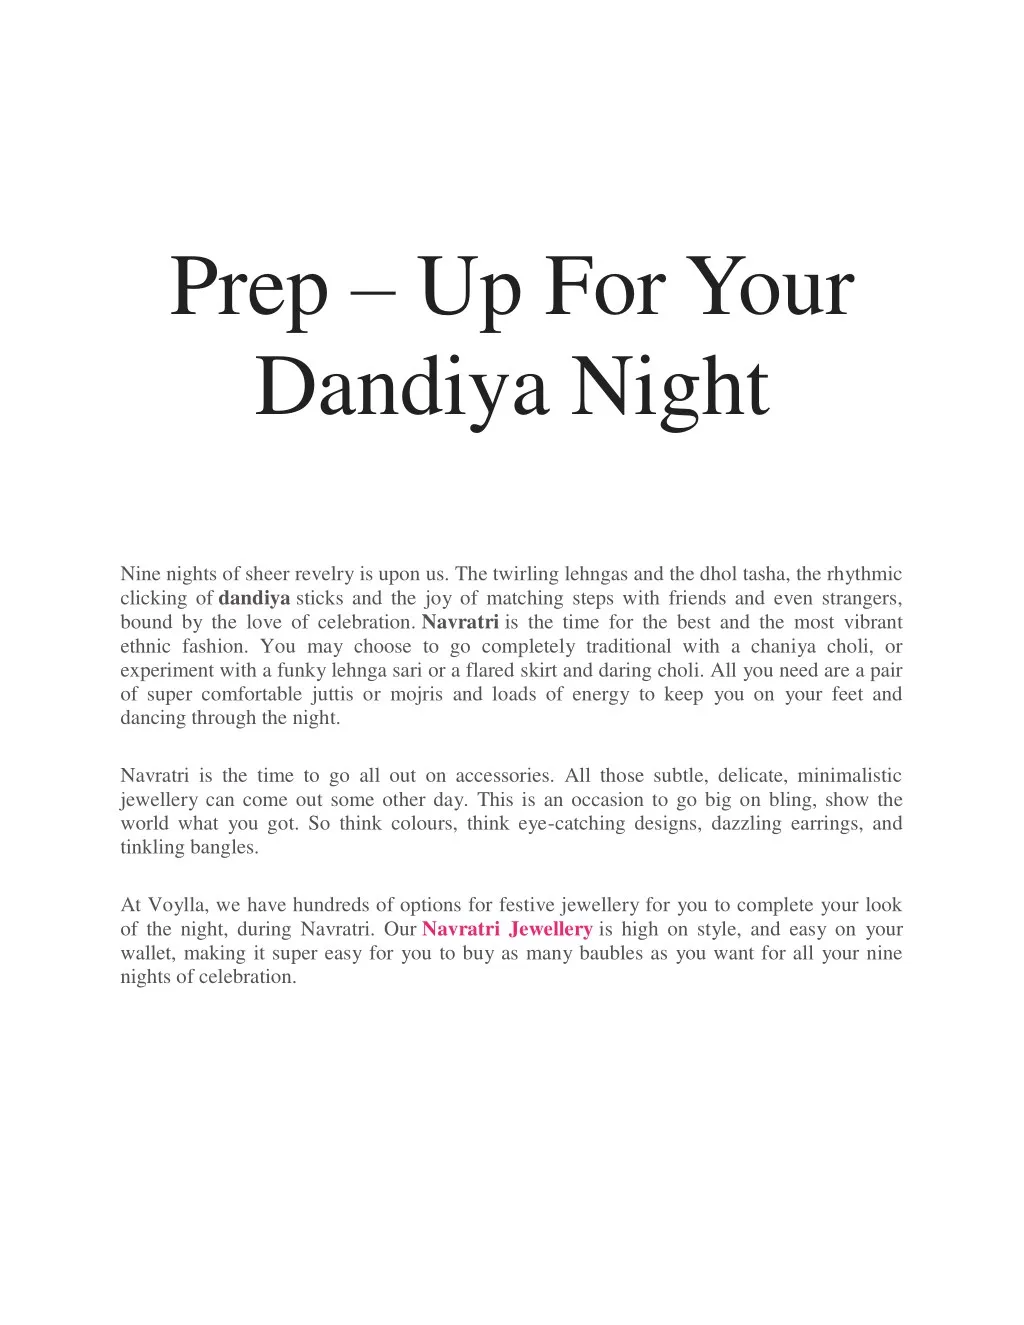 prep up for your dandiya night